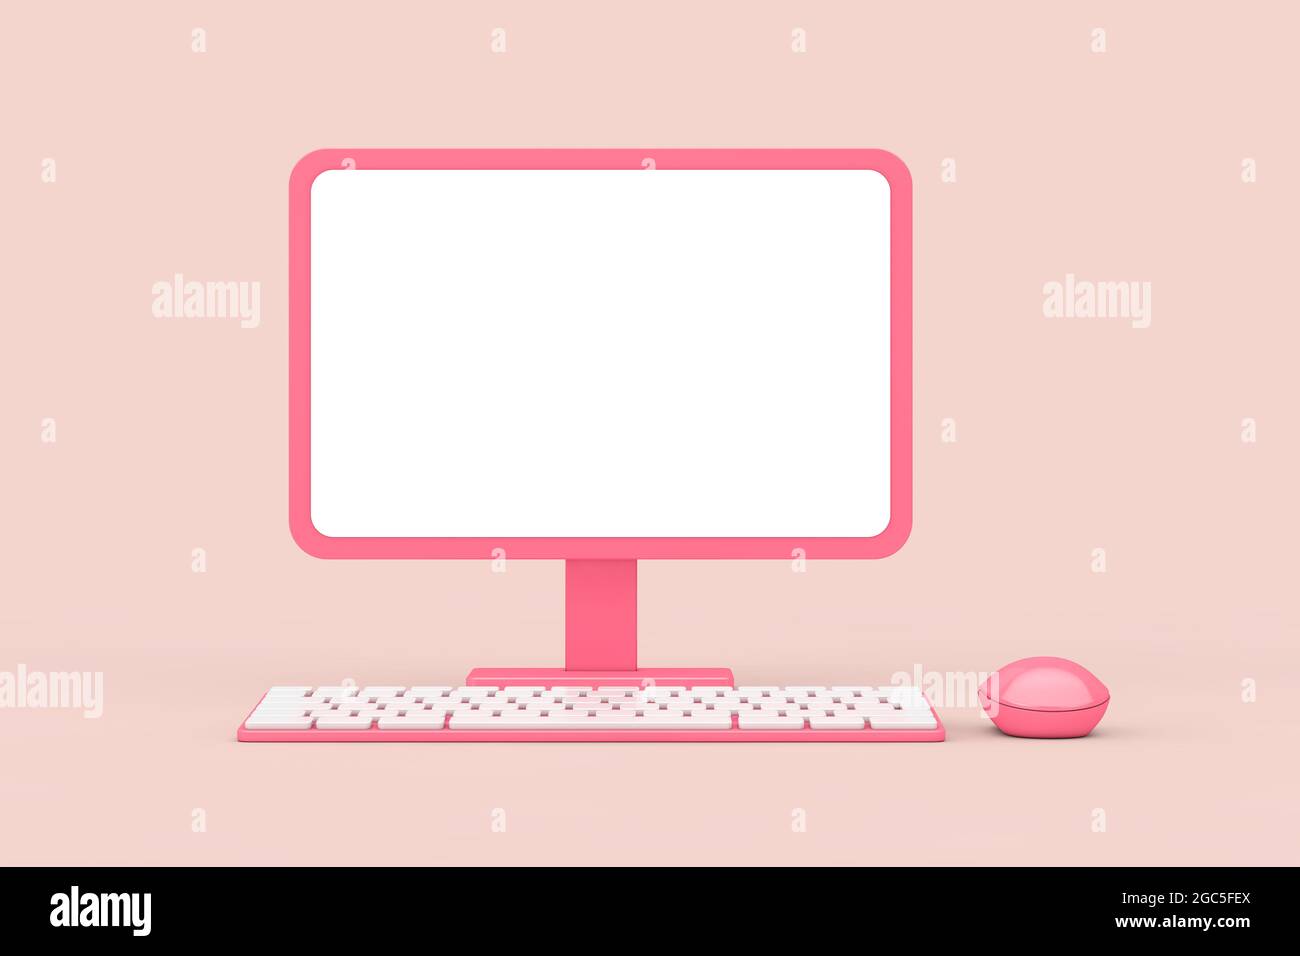 Bạn đang tìm kiếm một hình nền máy tính màu hồng để tạo cảm giác mới mẻ và tươi trẻ cho thiết bị của mình? Hãy xem ngay hình ảnh đẹp lung linh này, với sắc hồng tươi sáng và họa tiết độc đáo. Đảm bảo sẽ làm bạn hài lòng với lựa chọn của mình.